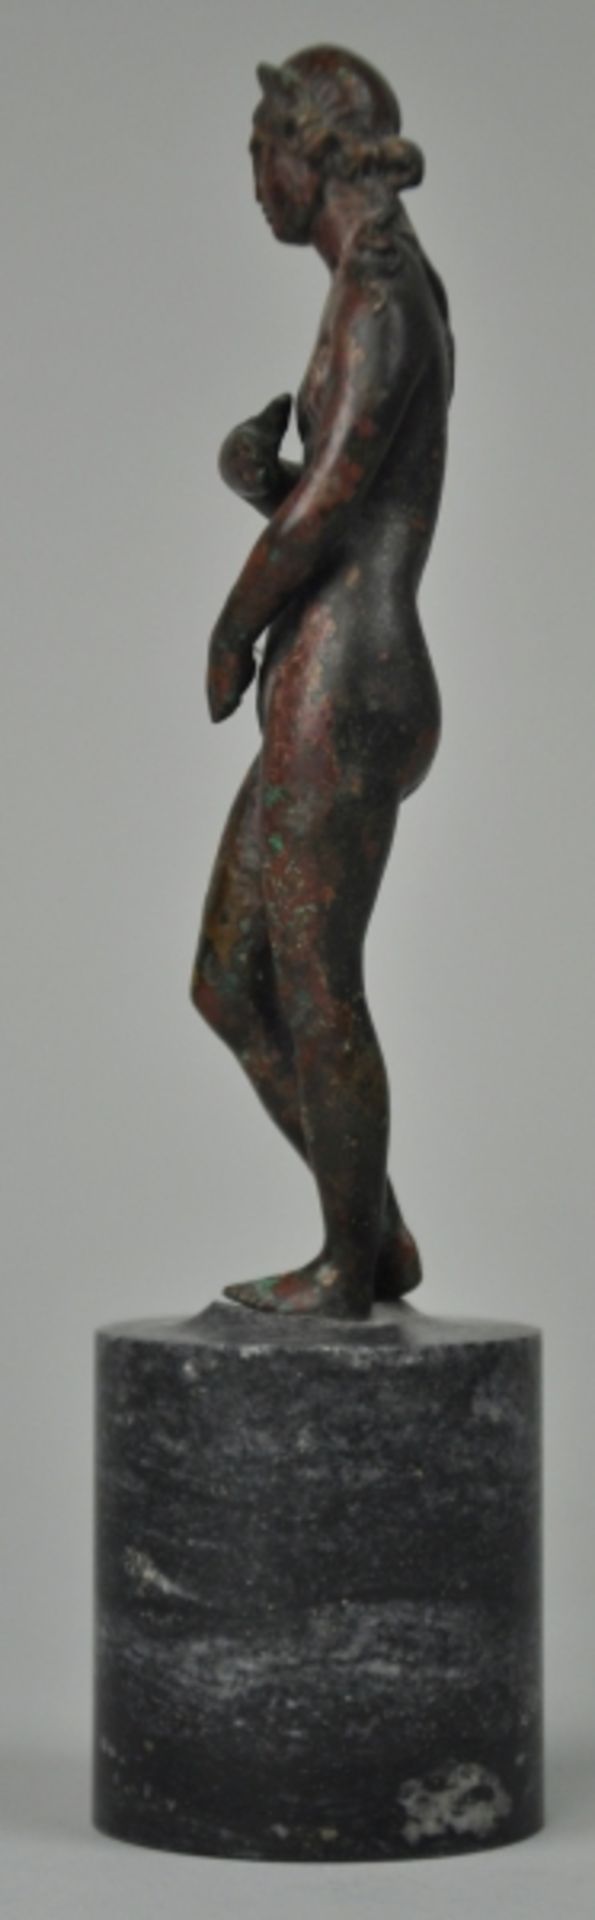 VENUS im Stile der kapitolinischen Venus, sich die Scham bedeckend, mit langem lockigen Haar, - Image 5 of 6